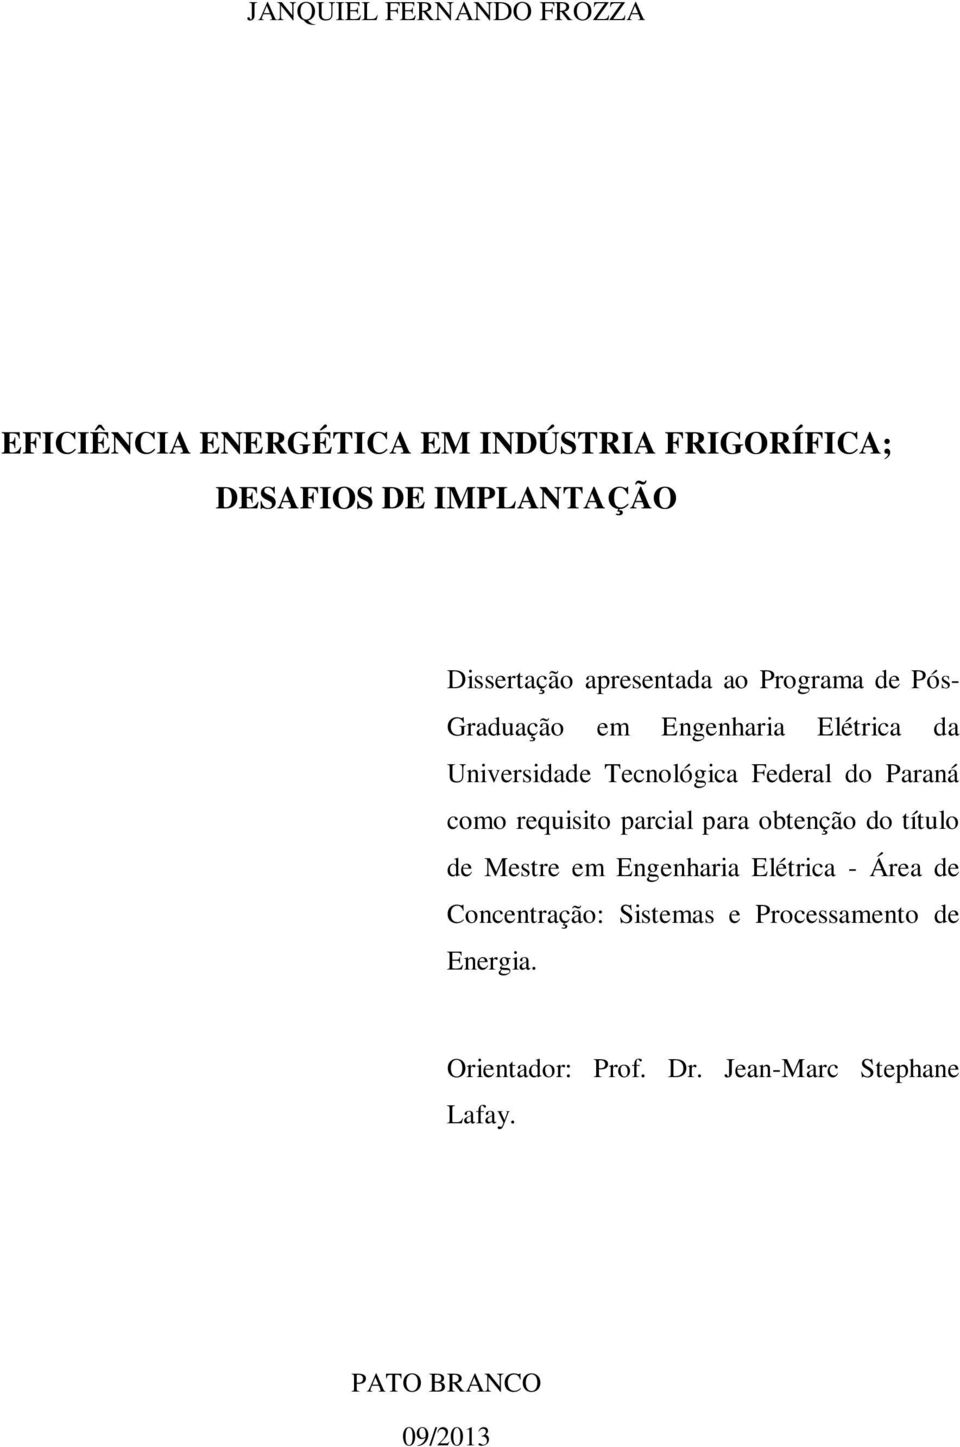 Federal do Paraná como requisito parcial para obtenção do título de Mestre em Engenharia Elétrica - Área